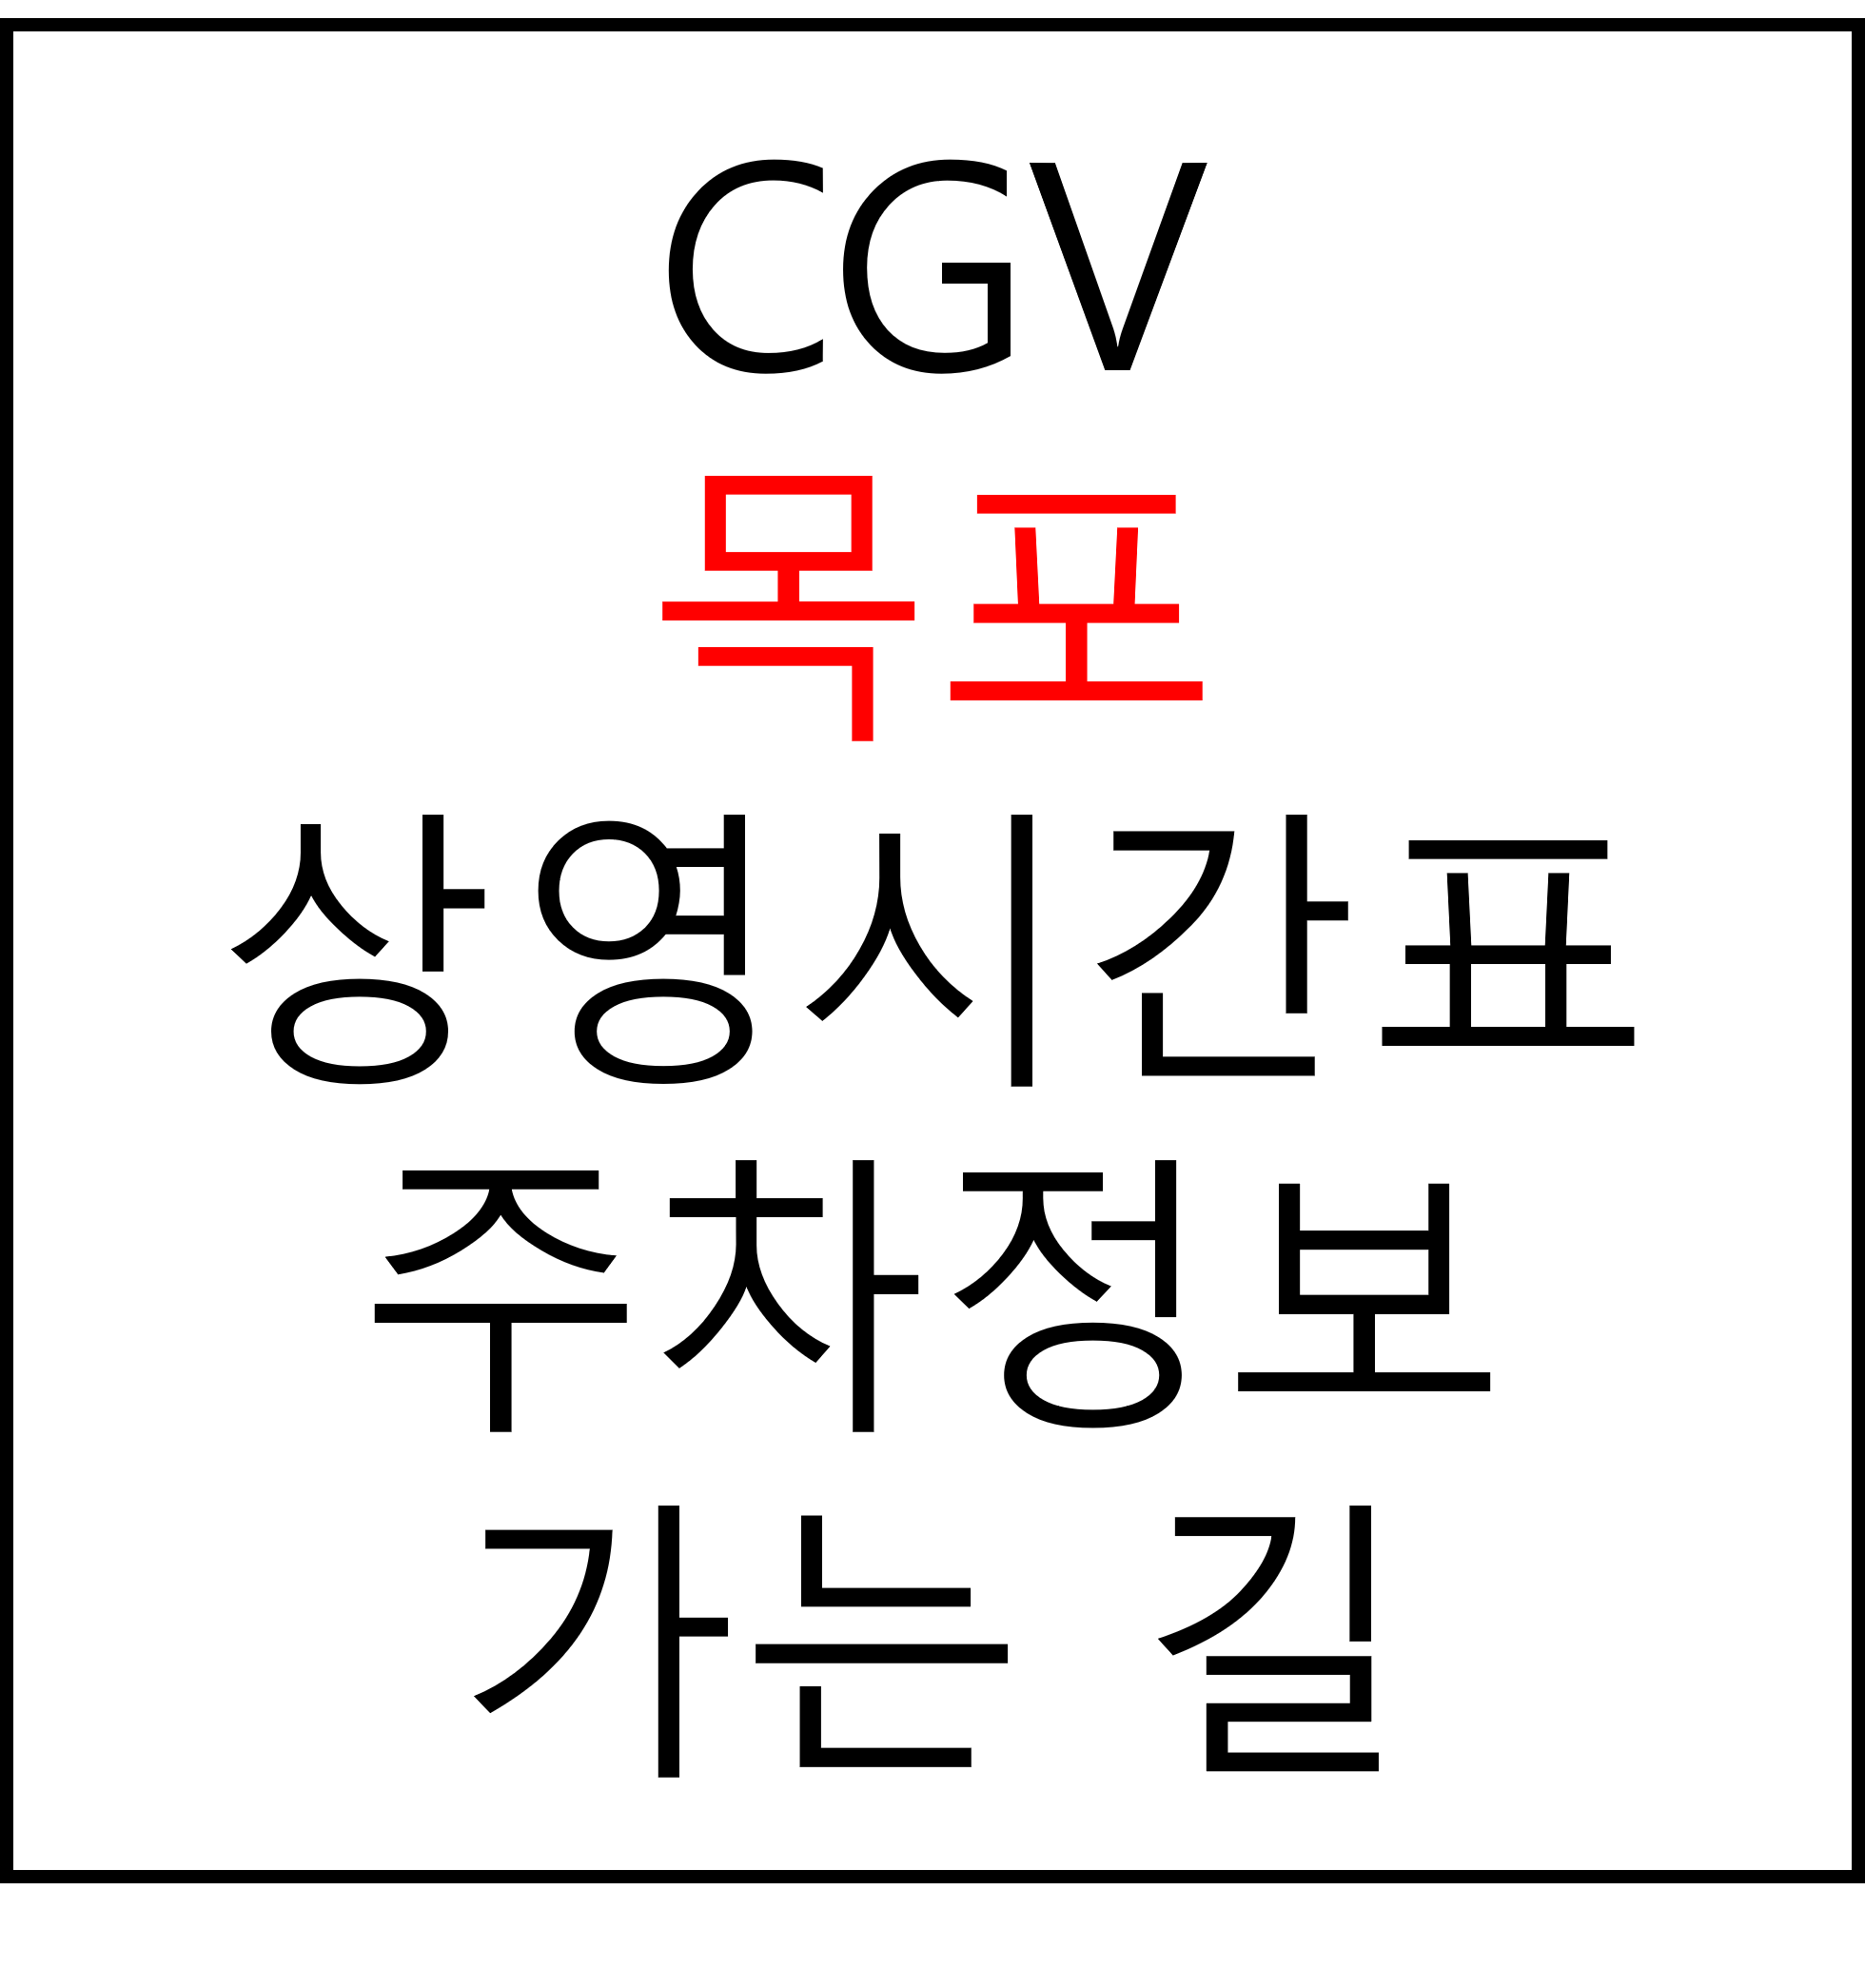 목포 CGV 상영시간표, 주차장, 주차요금, 가는법, 예매, 관람료, 위치, 할인 혜택 확인 확인